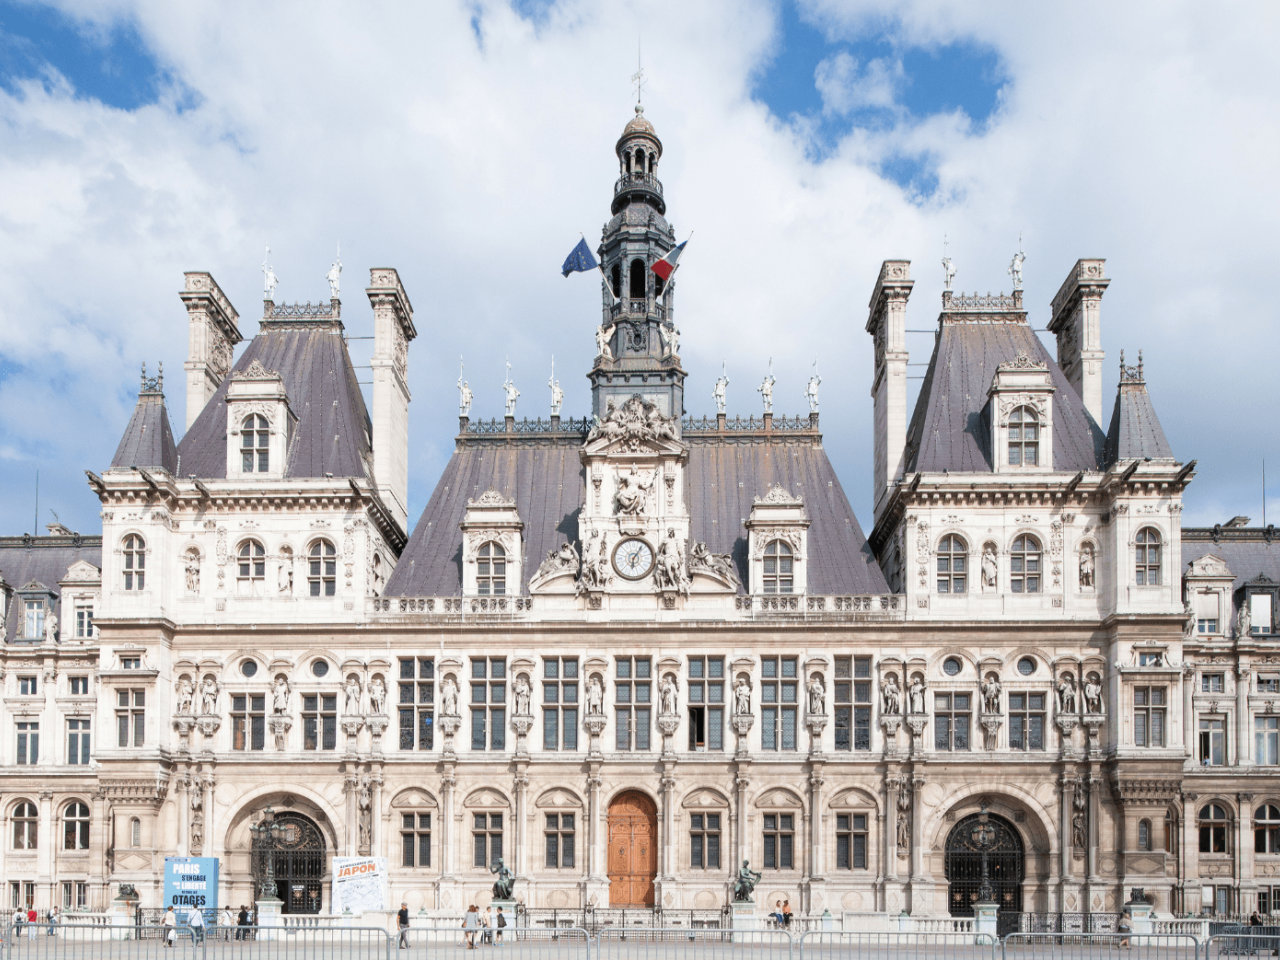 Hôtel de Ville di Parigi: cosa è, dove si trova, informazioni utili